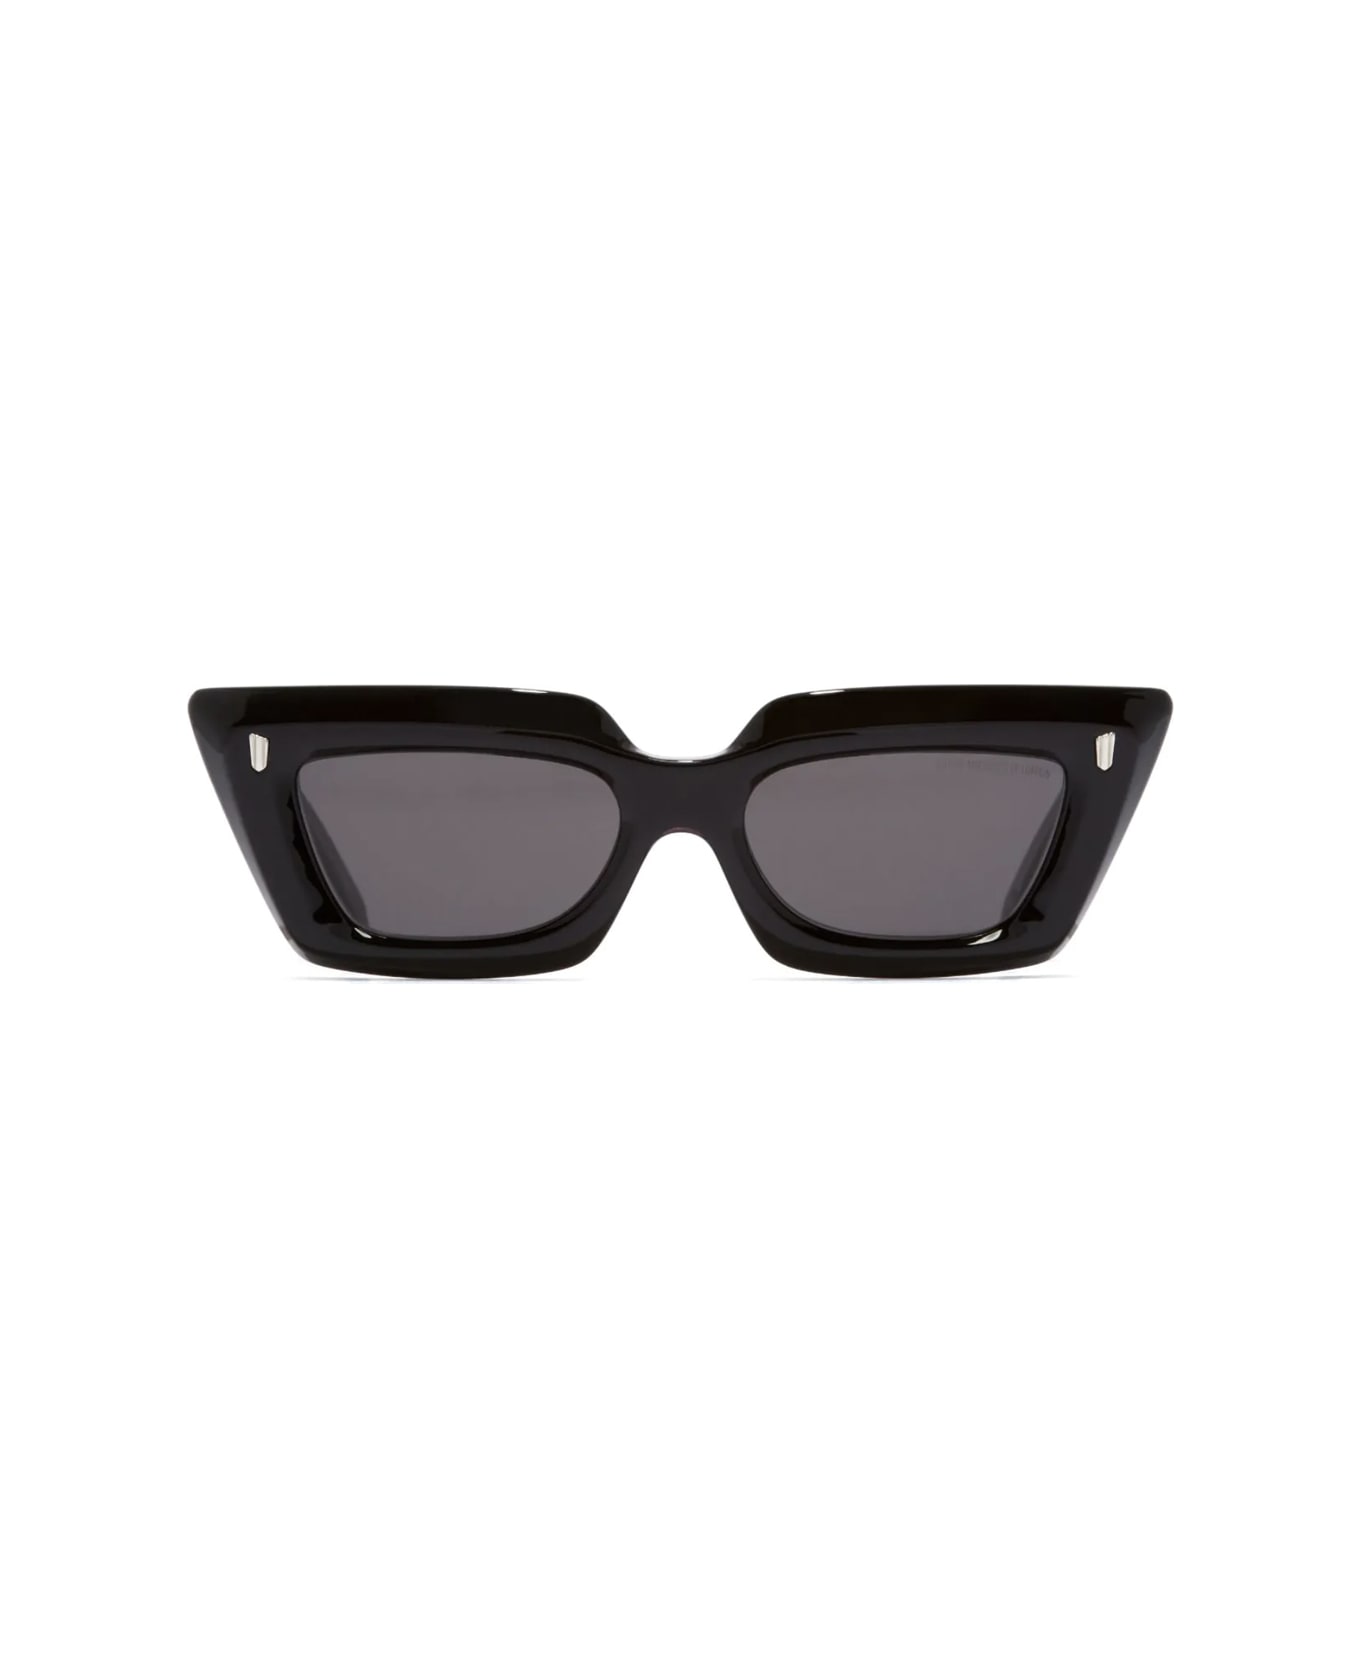 Cutler and Gross 1408 01 Sunglasses - Nero サングラス